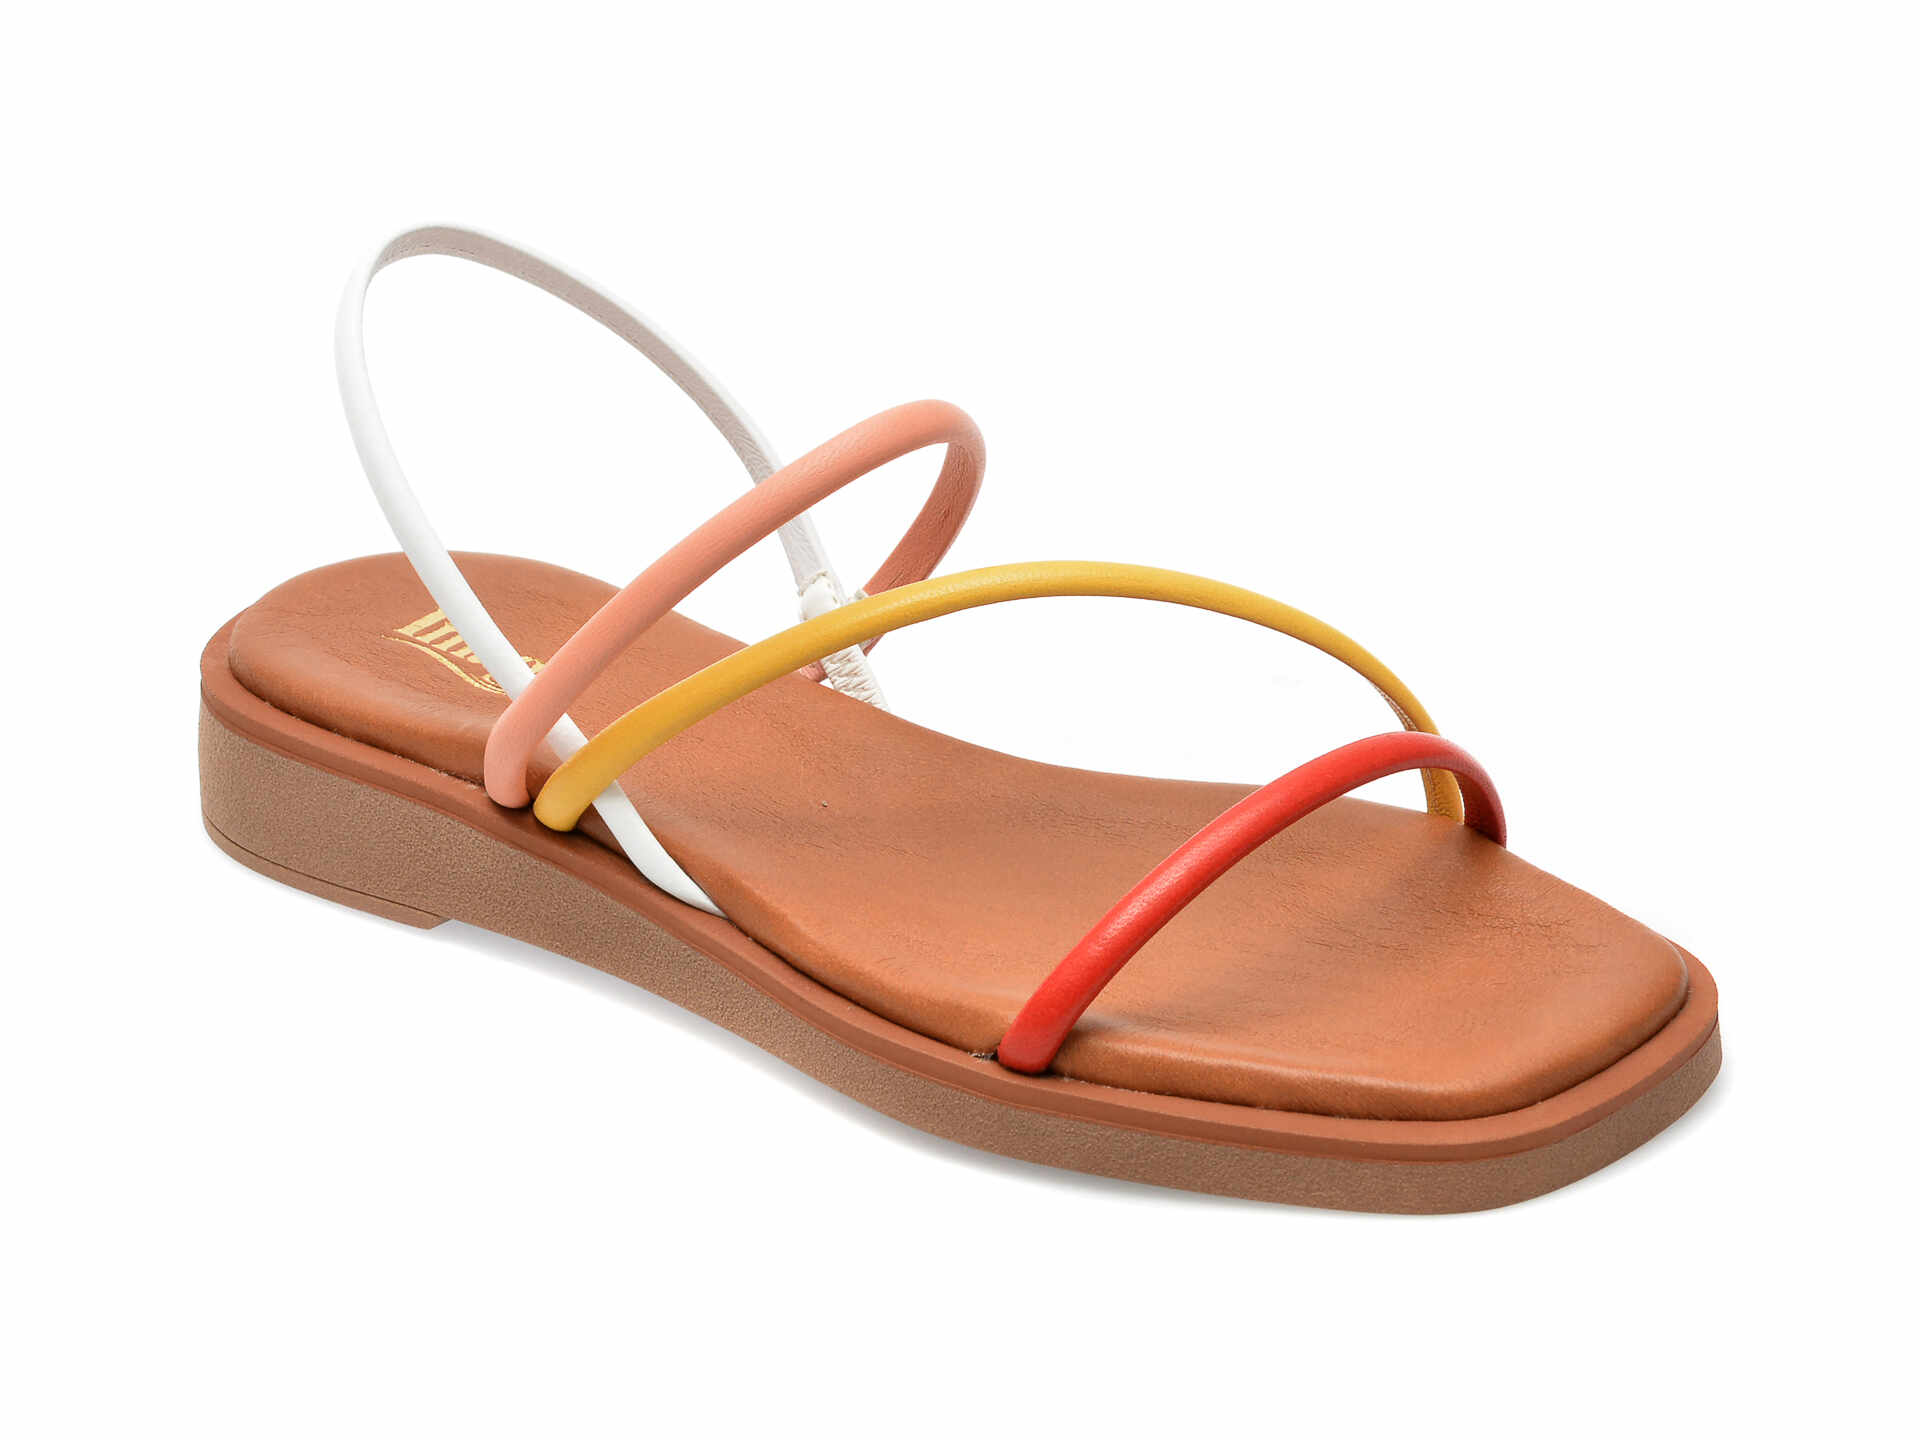 Sandale IMAGE multicolor, CAMILA, din piele naturala